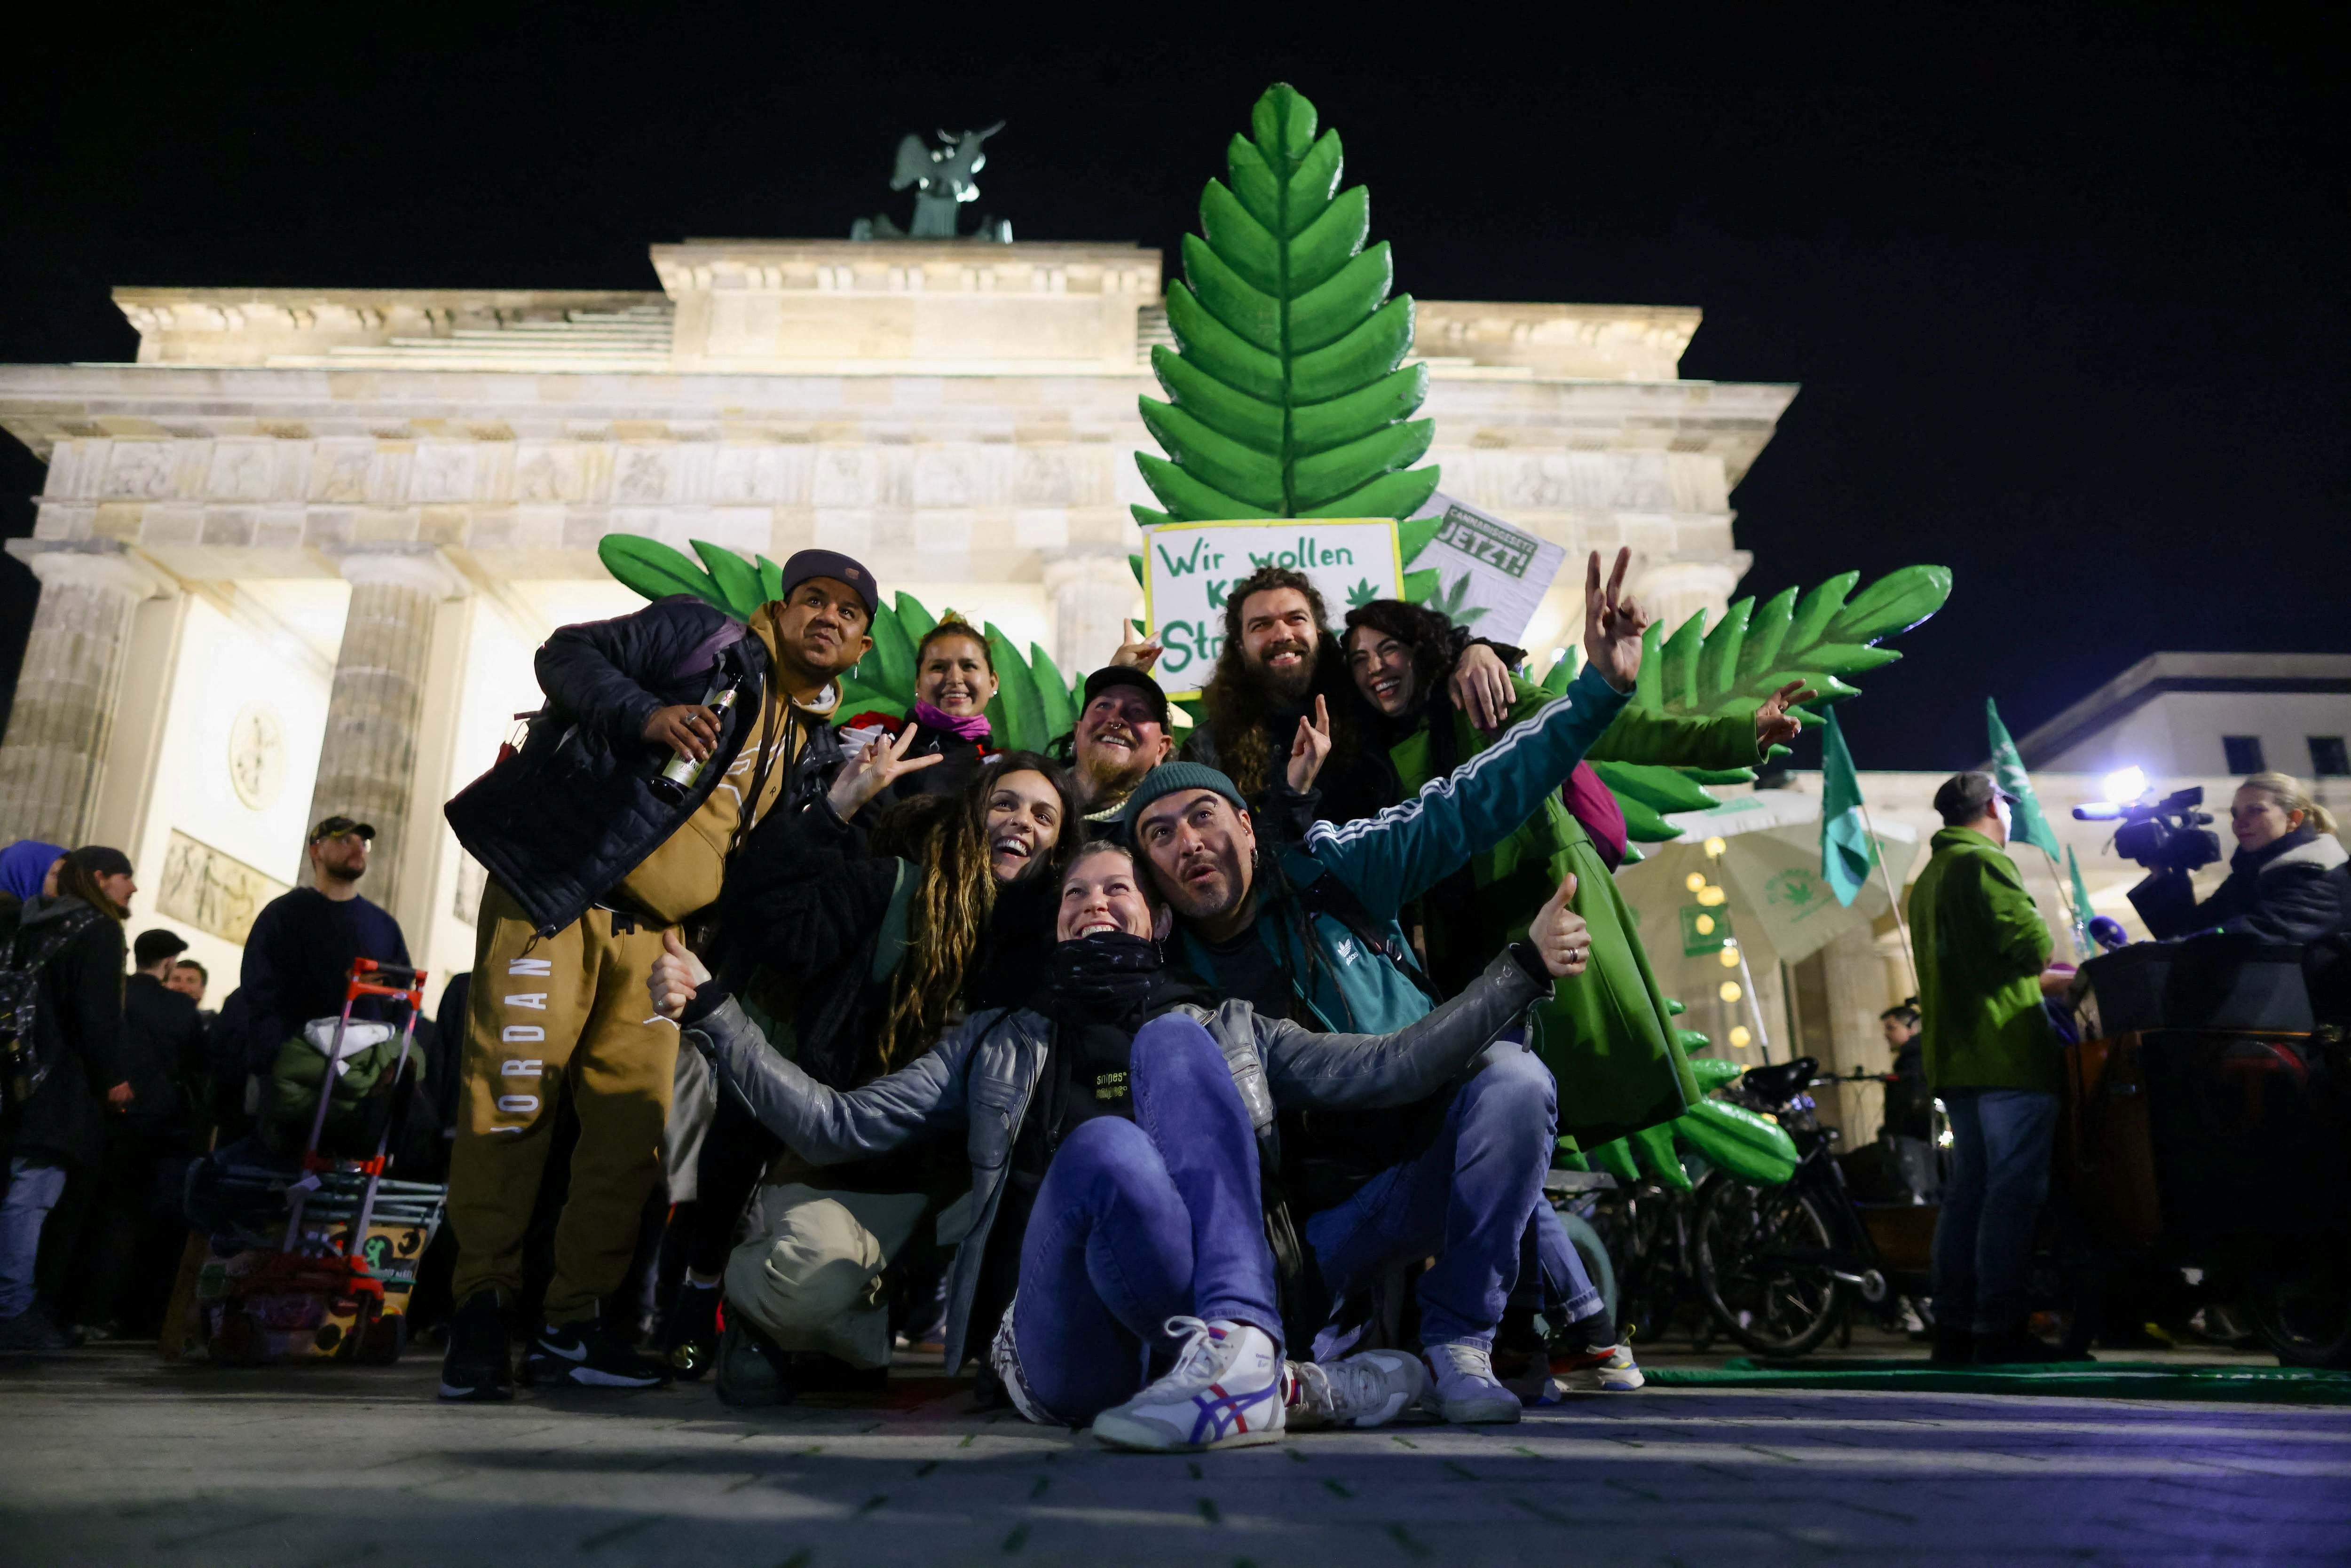 Personas celebran la legalización parcial del cannabis en Alemania con un "smoke in", en la Puerta de Brandenburgo en Berlín (REUTERS/Christian Mang)